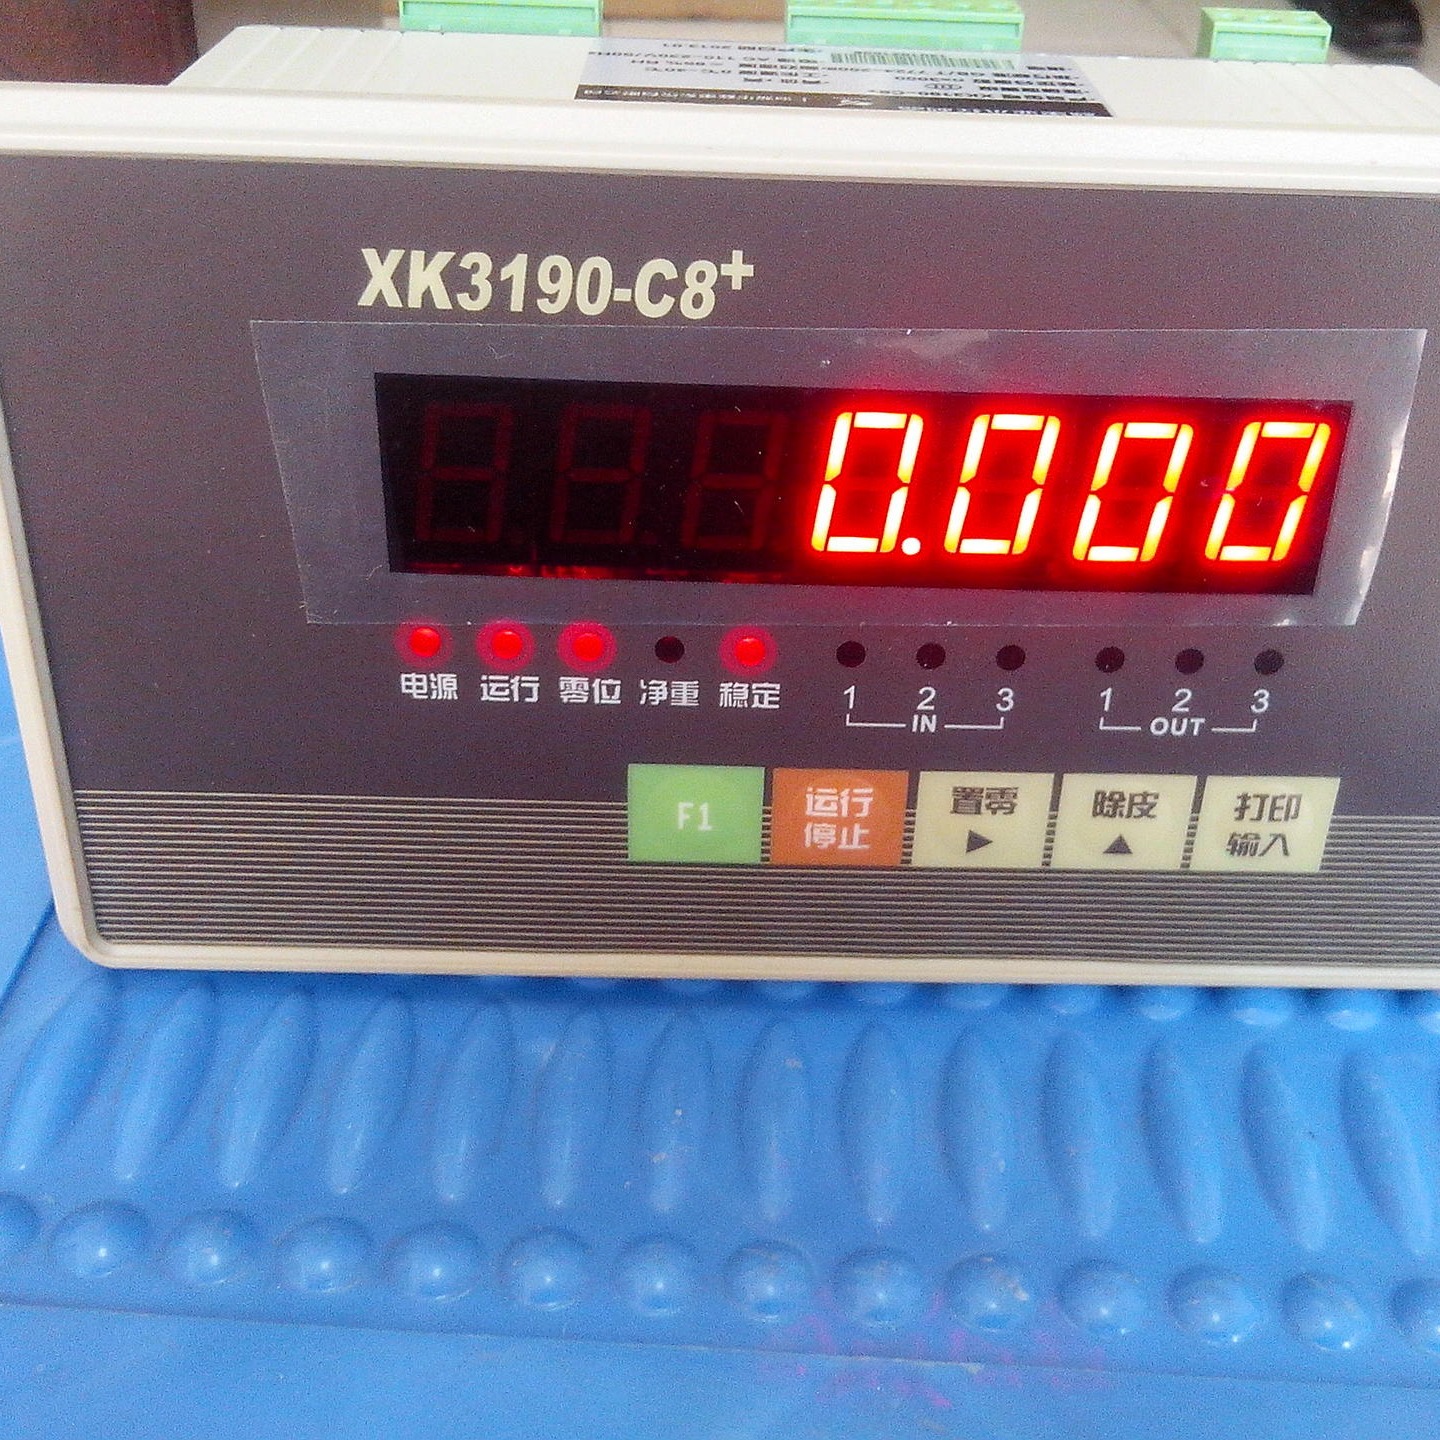 厂家批发XK3190-C8+电子秤 上海宿衡50kg/5g带4-20ma模拟量输出电子秤